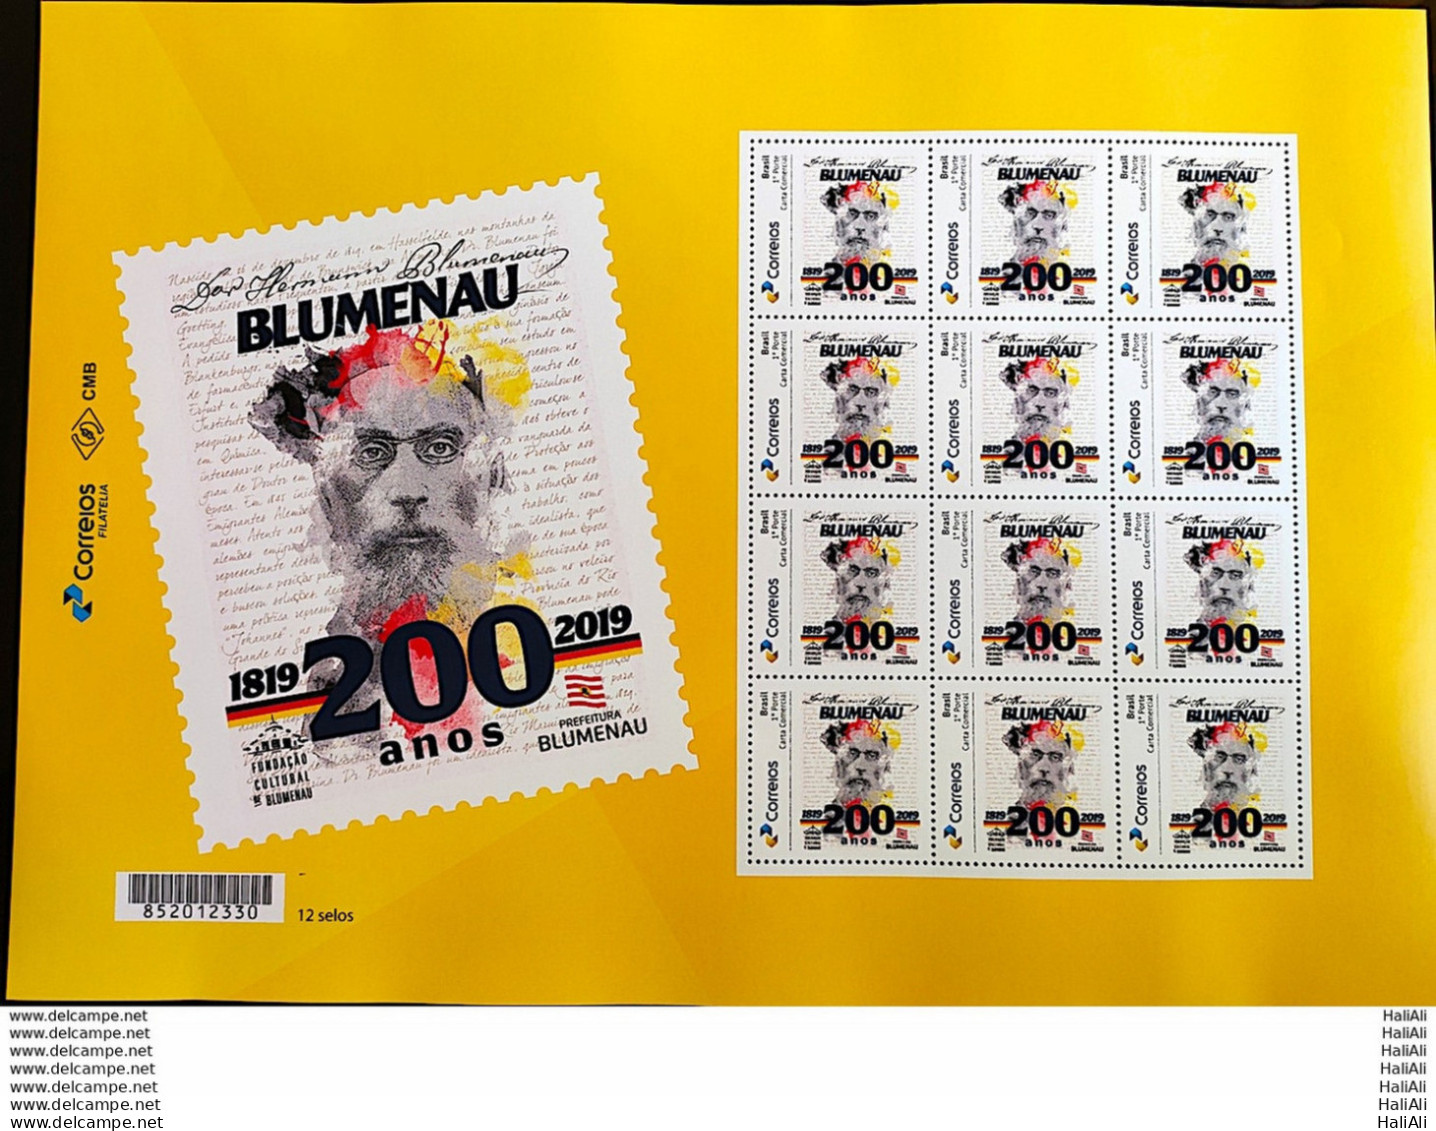 PB 134 Brazil Personalized Stamp Hermann Blumenau 2019 Sheet G - Personnalisés